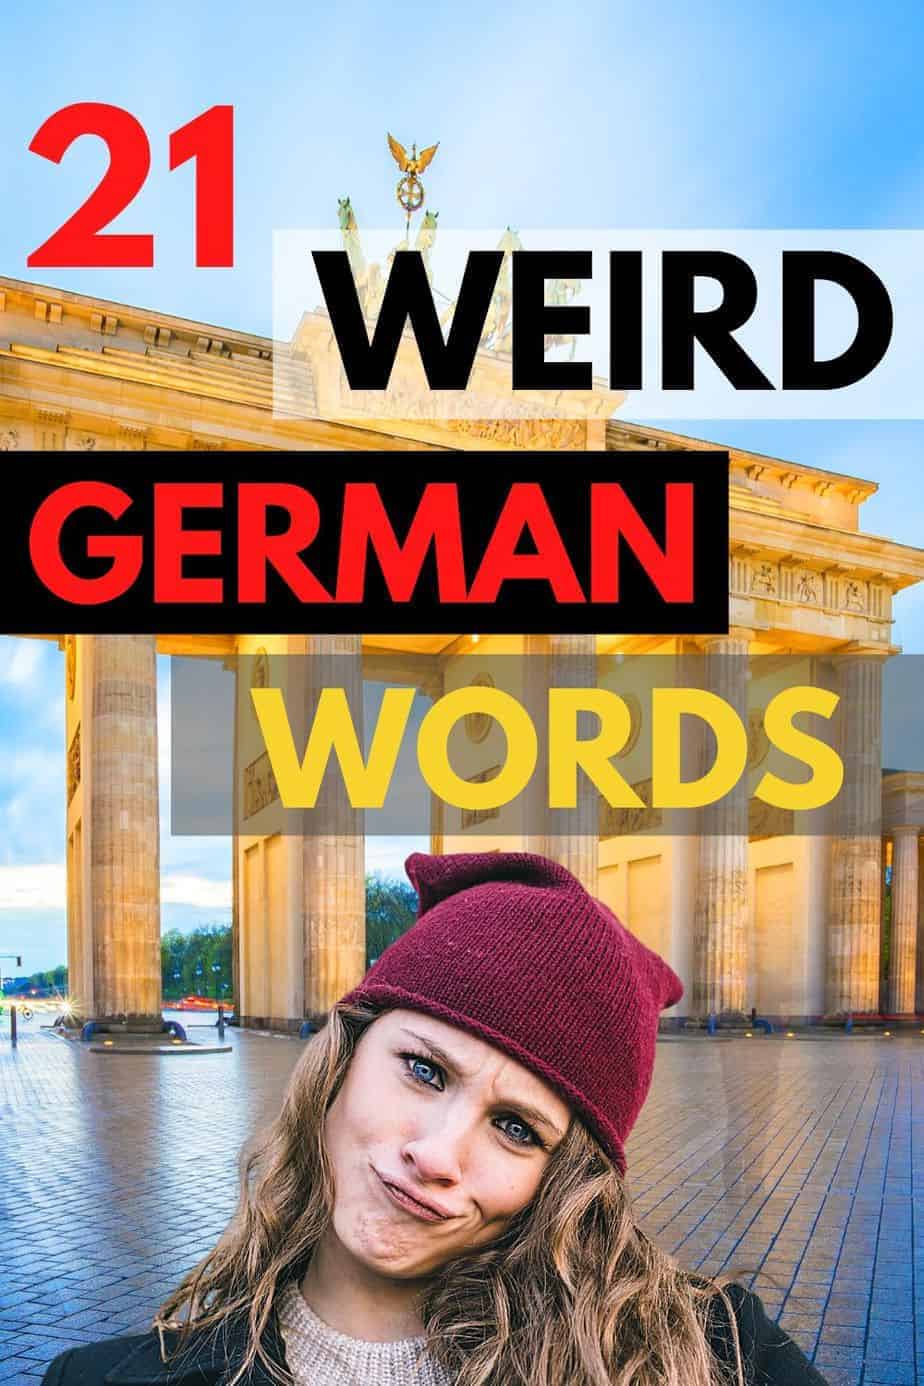 21 Weird German Words